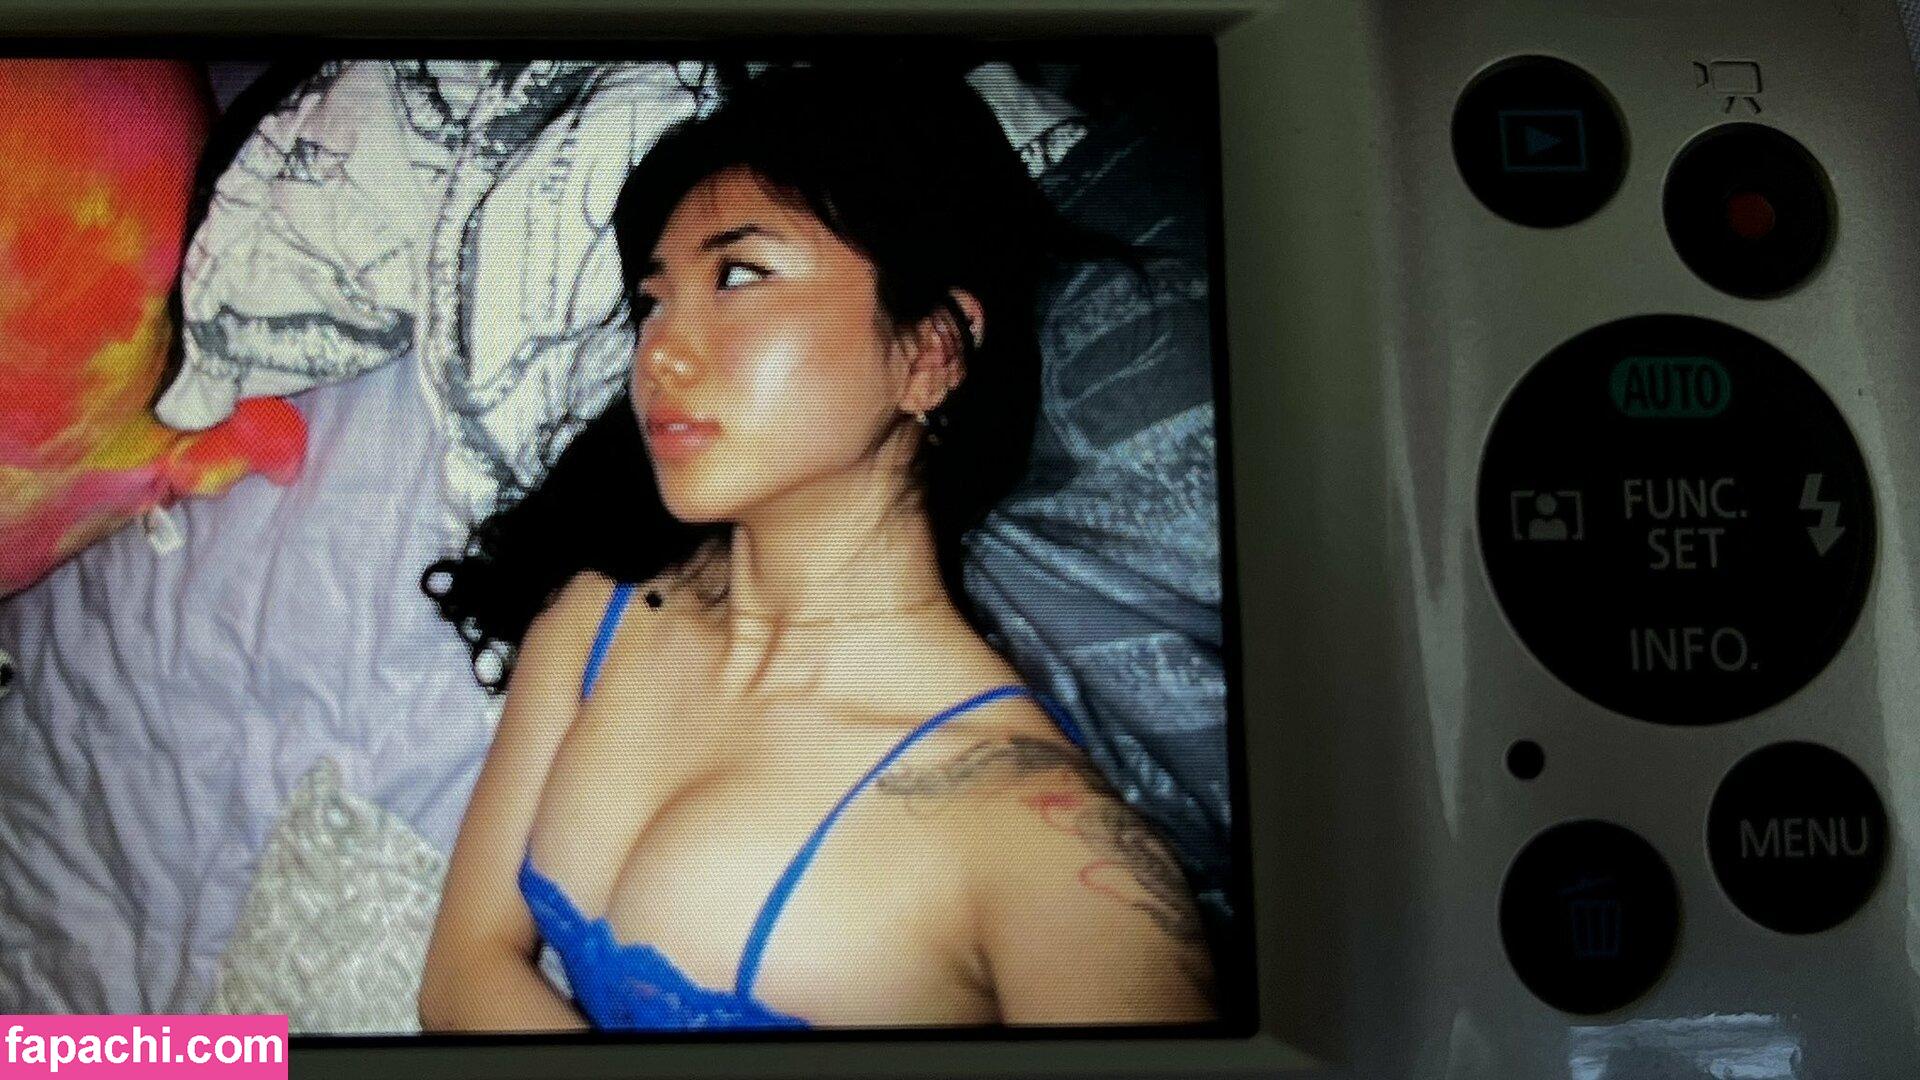 Joyy.li / thetasteofjoy leaked nude photo #0013 from OnlyFans/Patreon